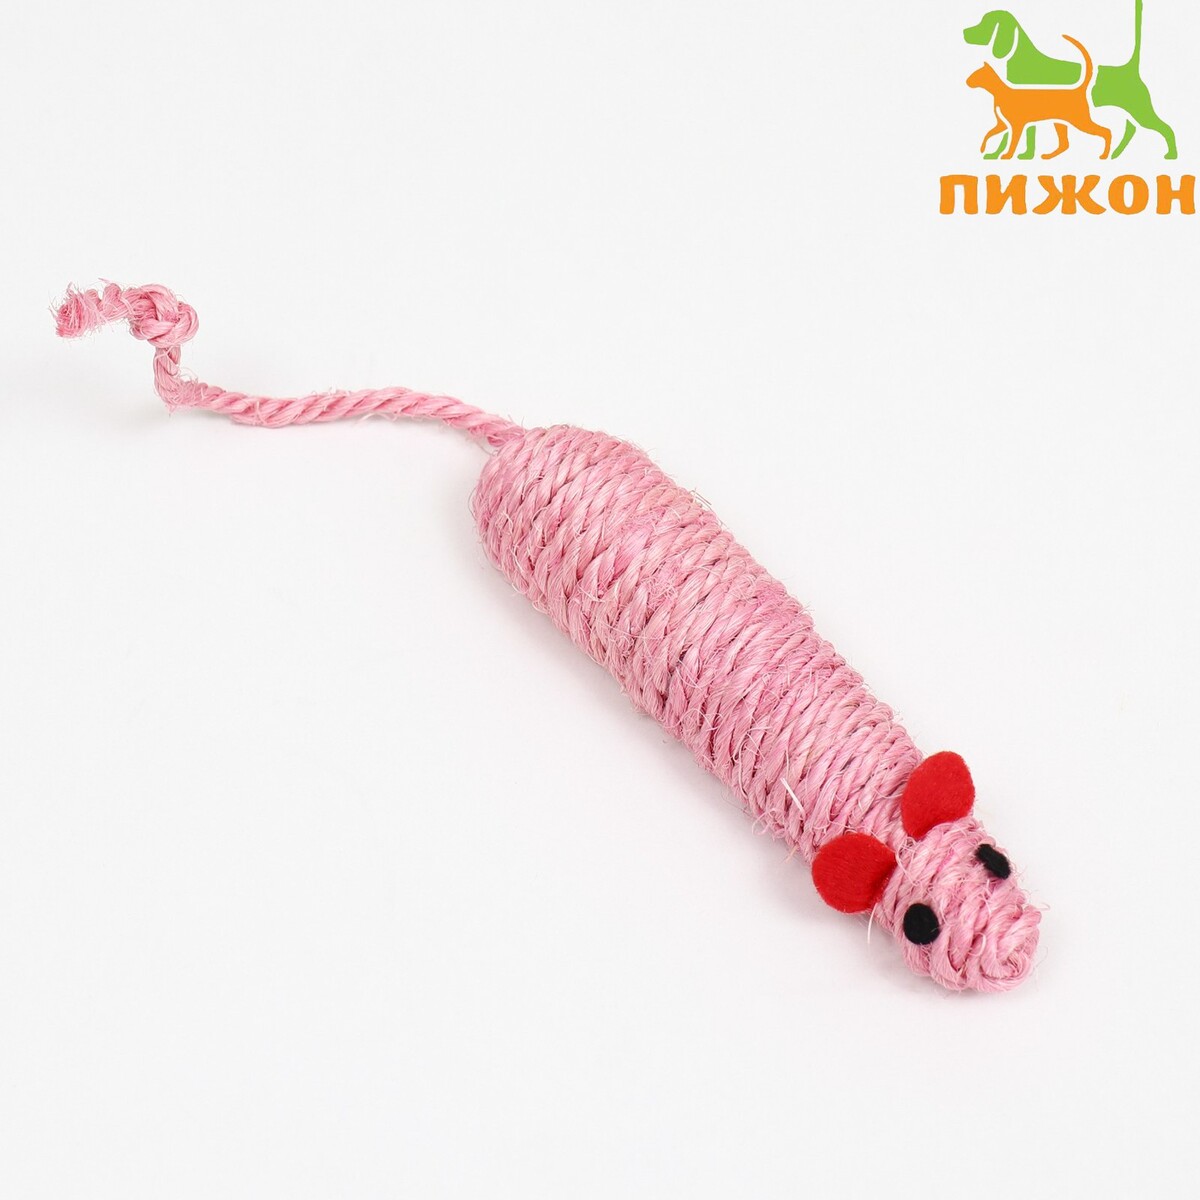 Игрушка сизалевая мышь погремушка сизалевая 7 см розовая белая